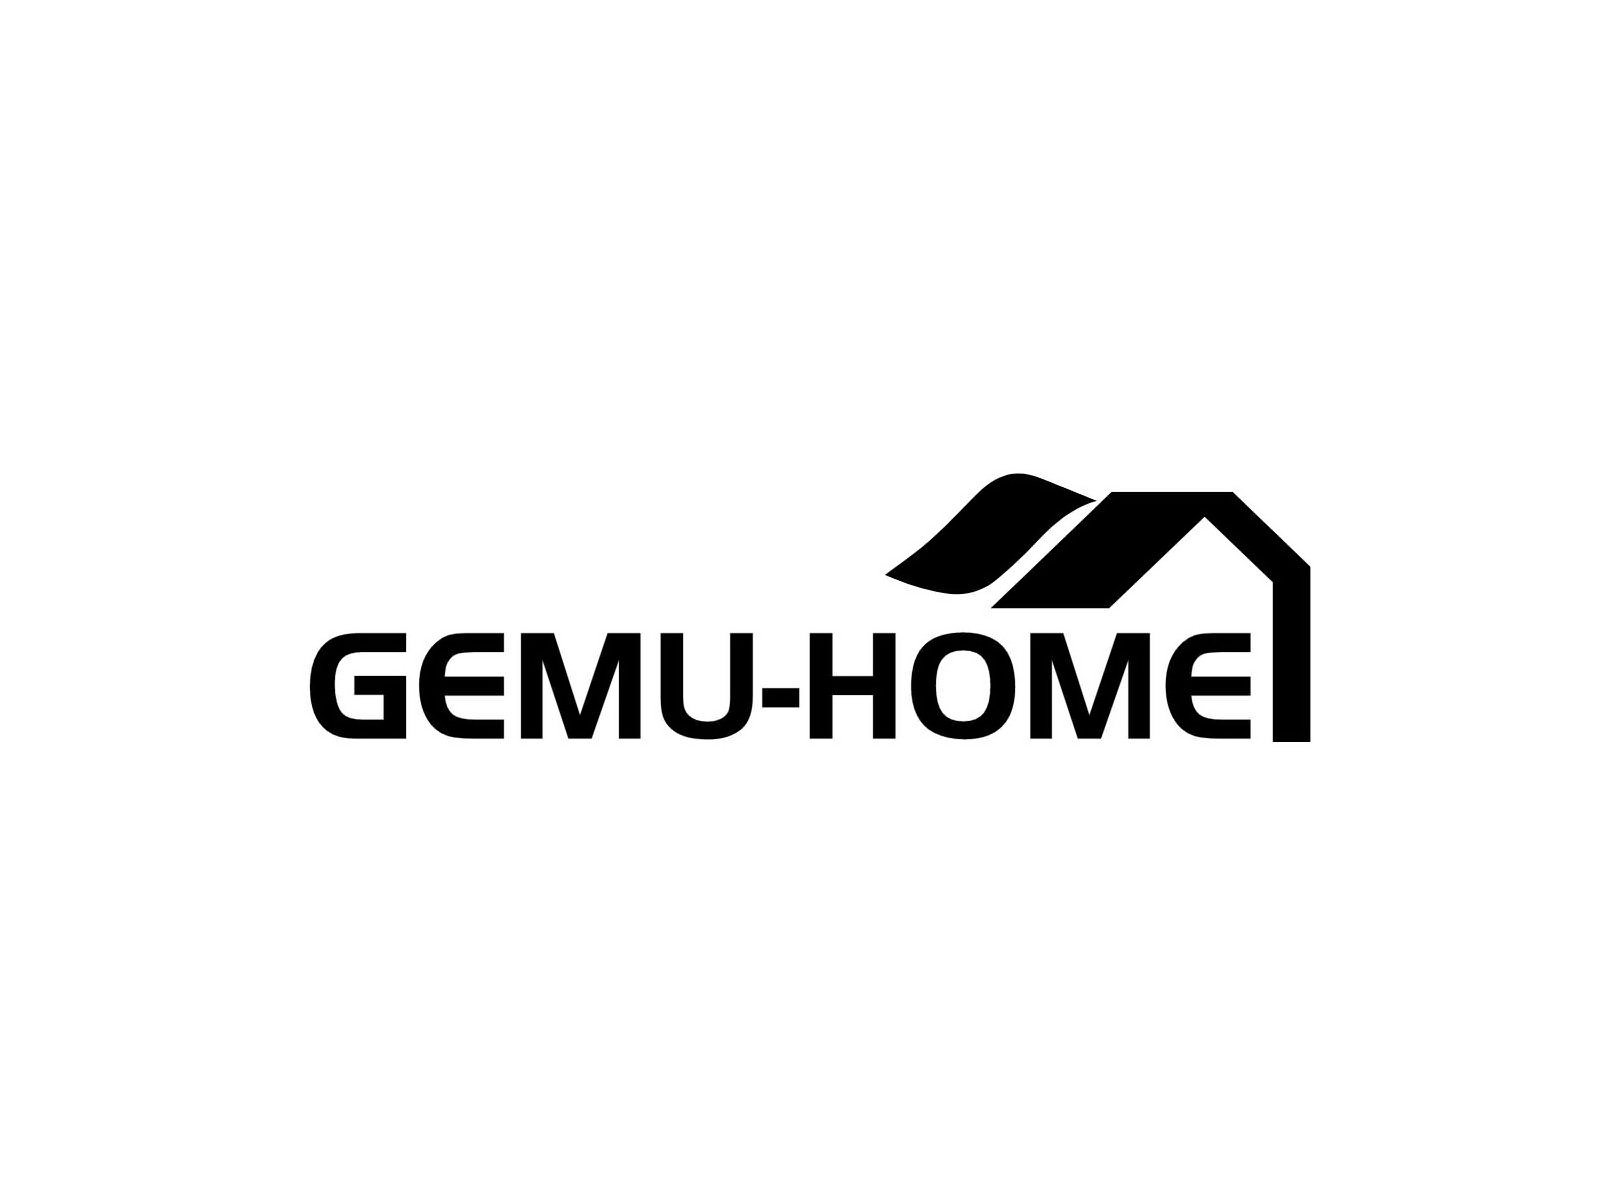  GEMU-HOME